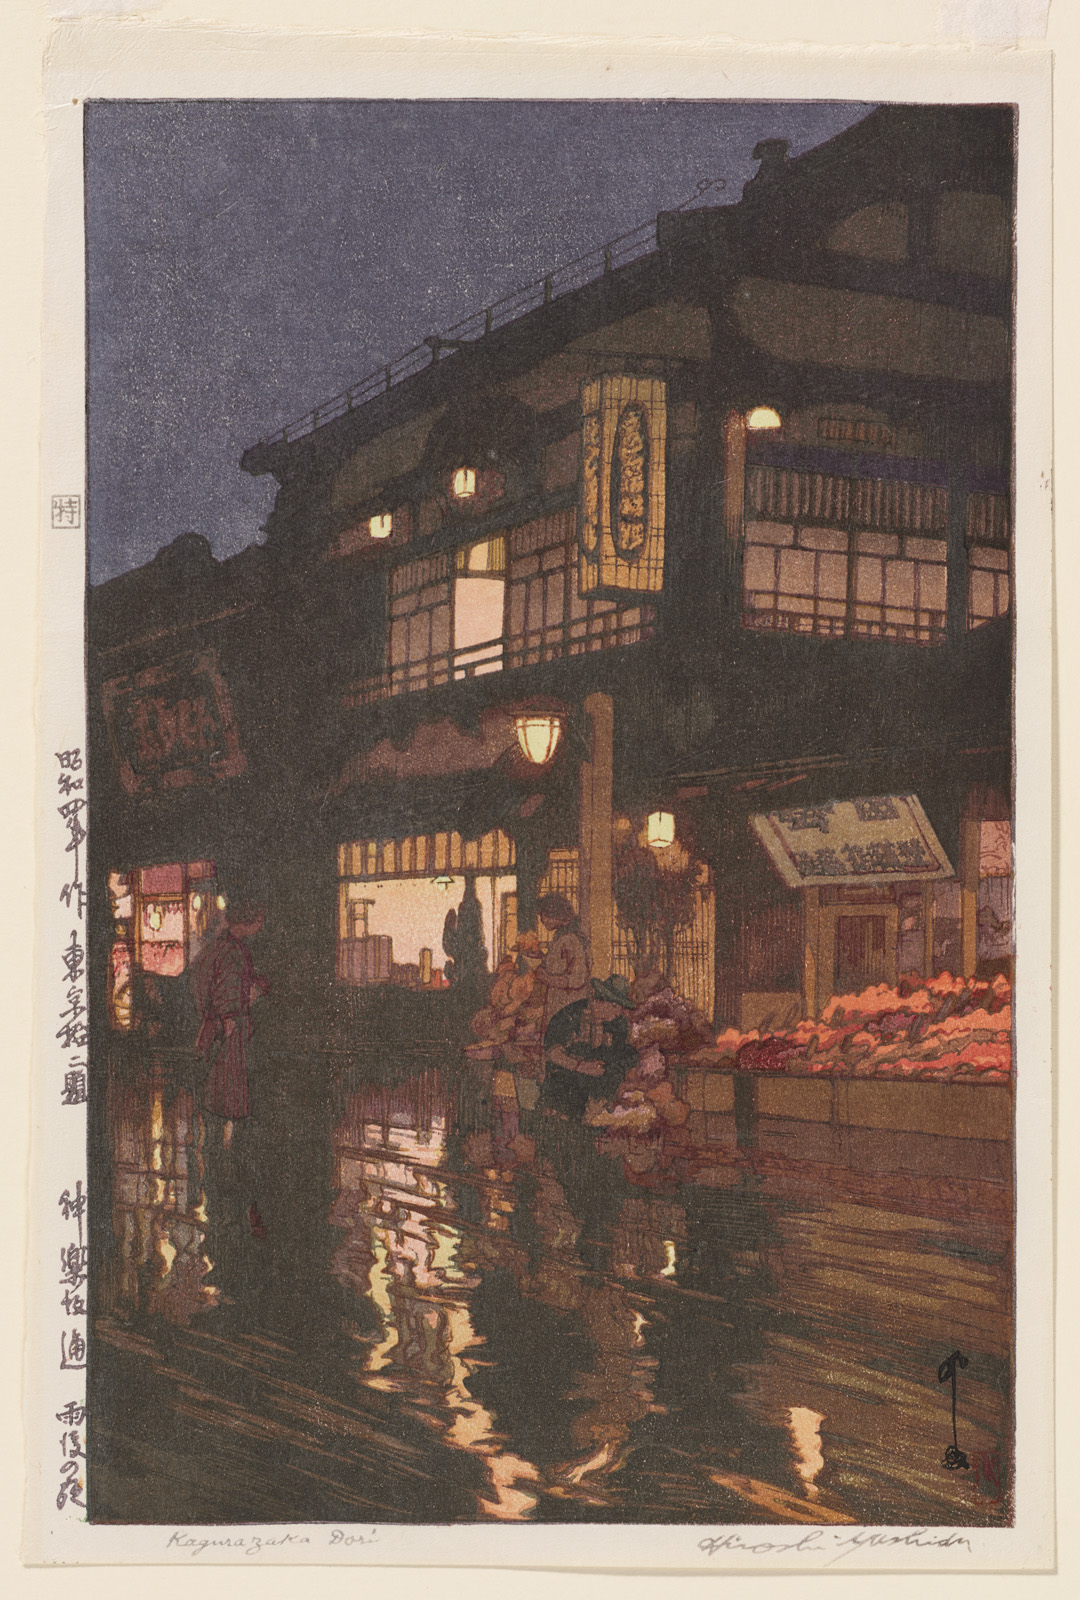 Kagurazaka Street after Night Rain